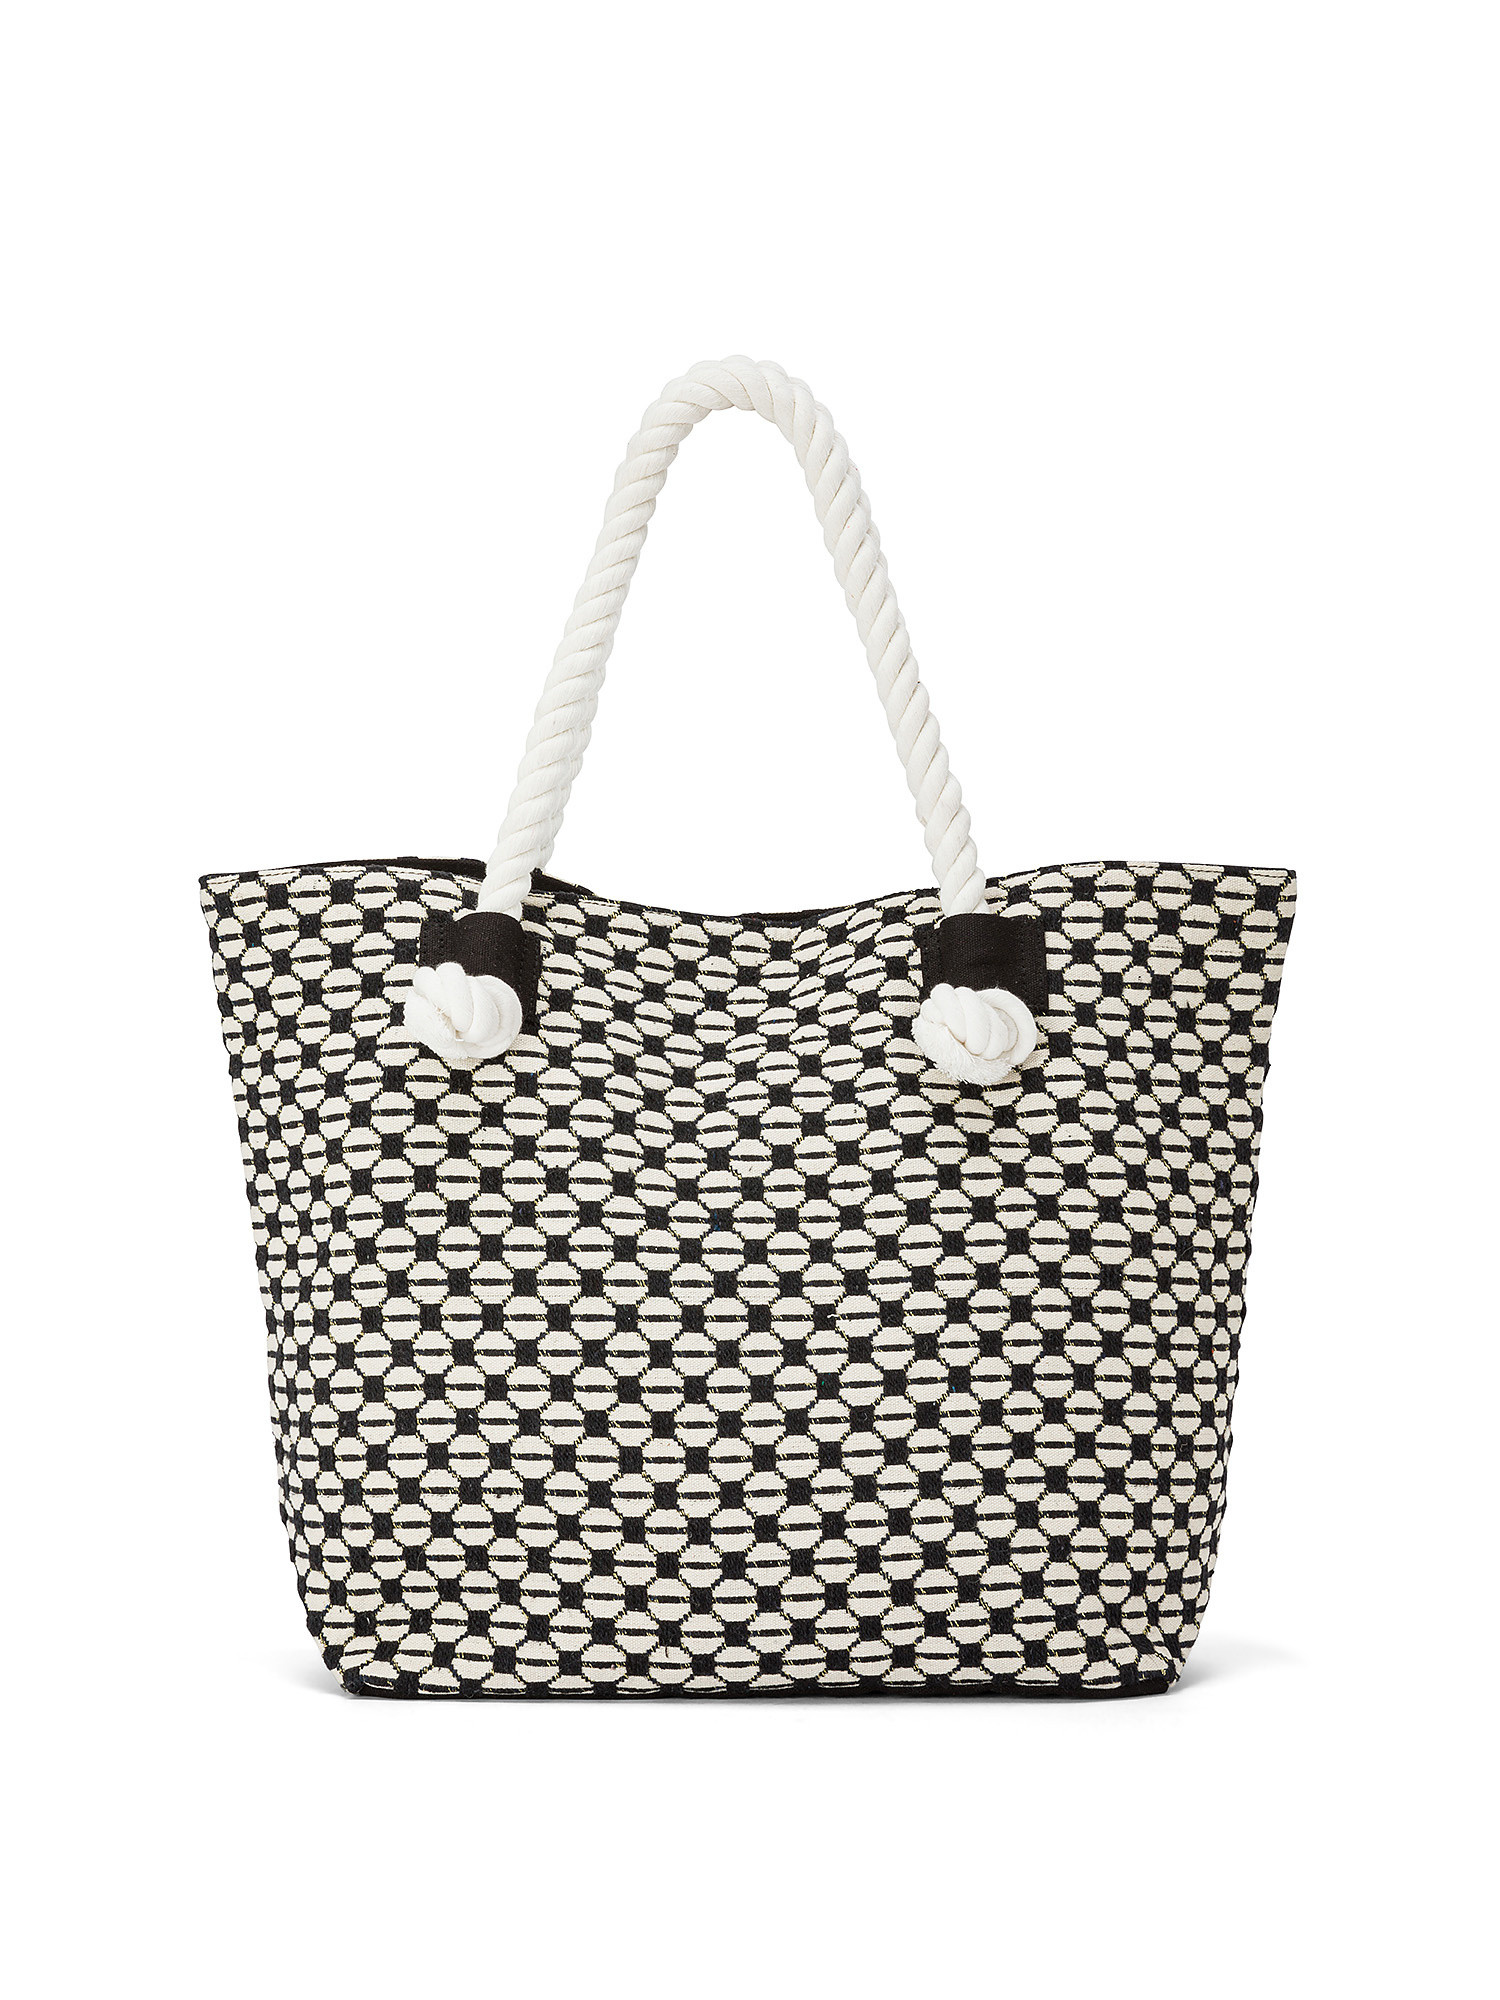 Koan - Shopping bag in jacquard fabric, White, large image number 0